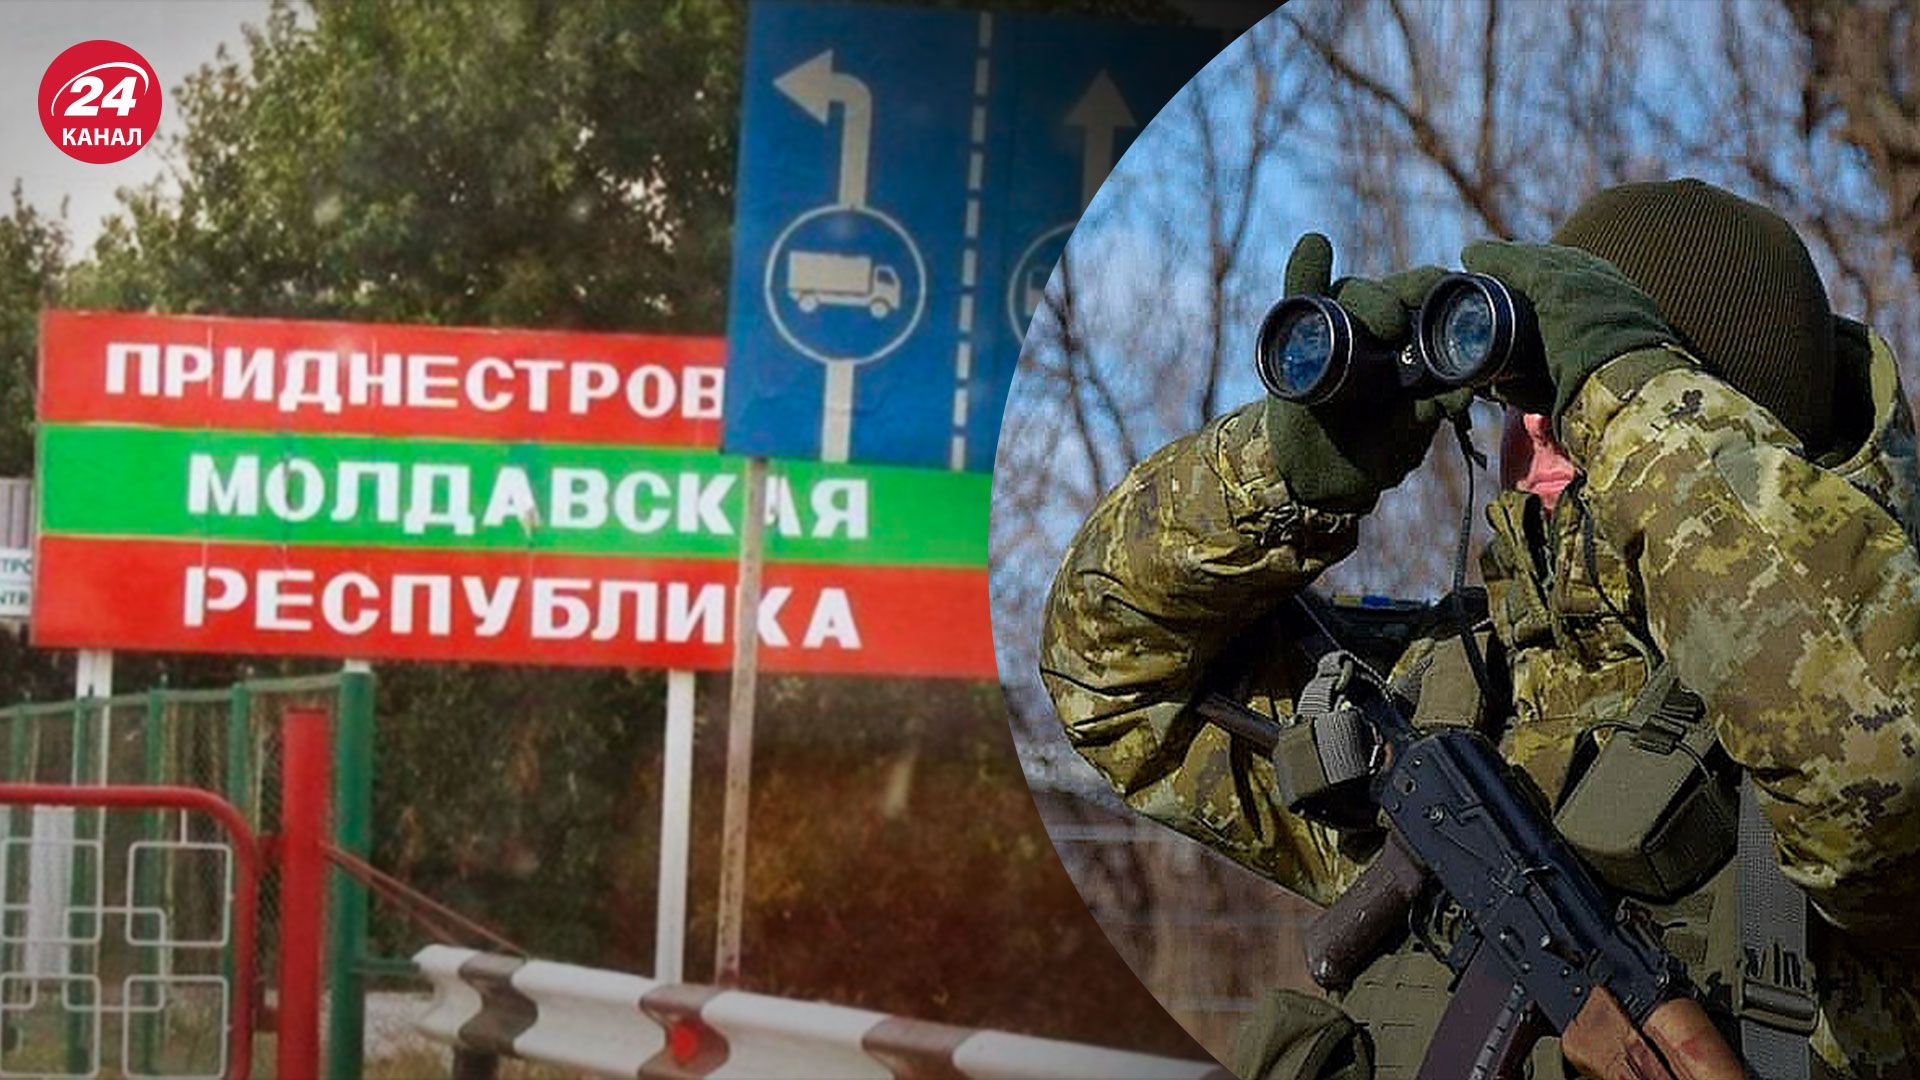 Ситуация с Приднестровьем - Россия пытается переложить ответственность на Украину - 24 Канал